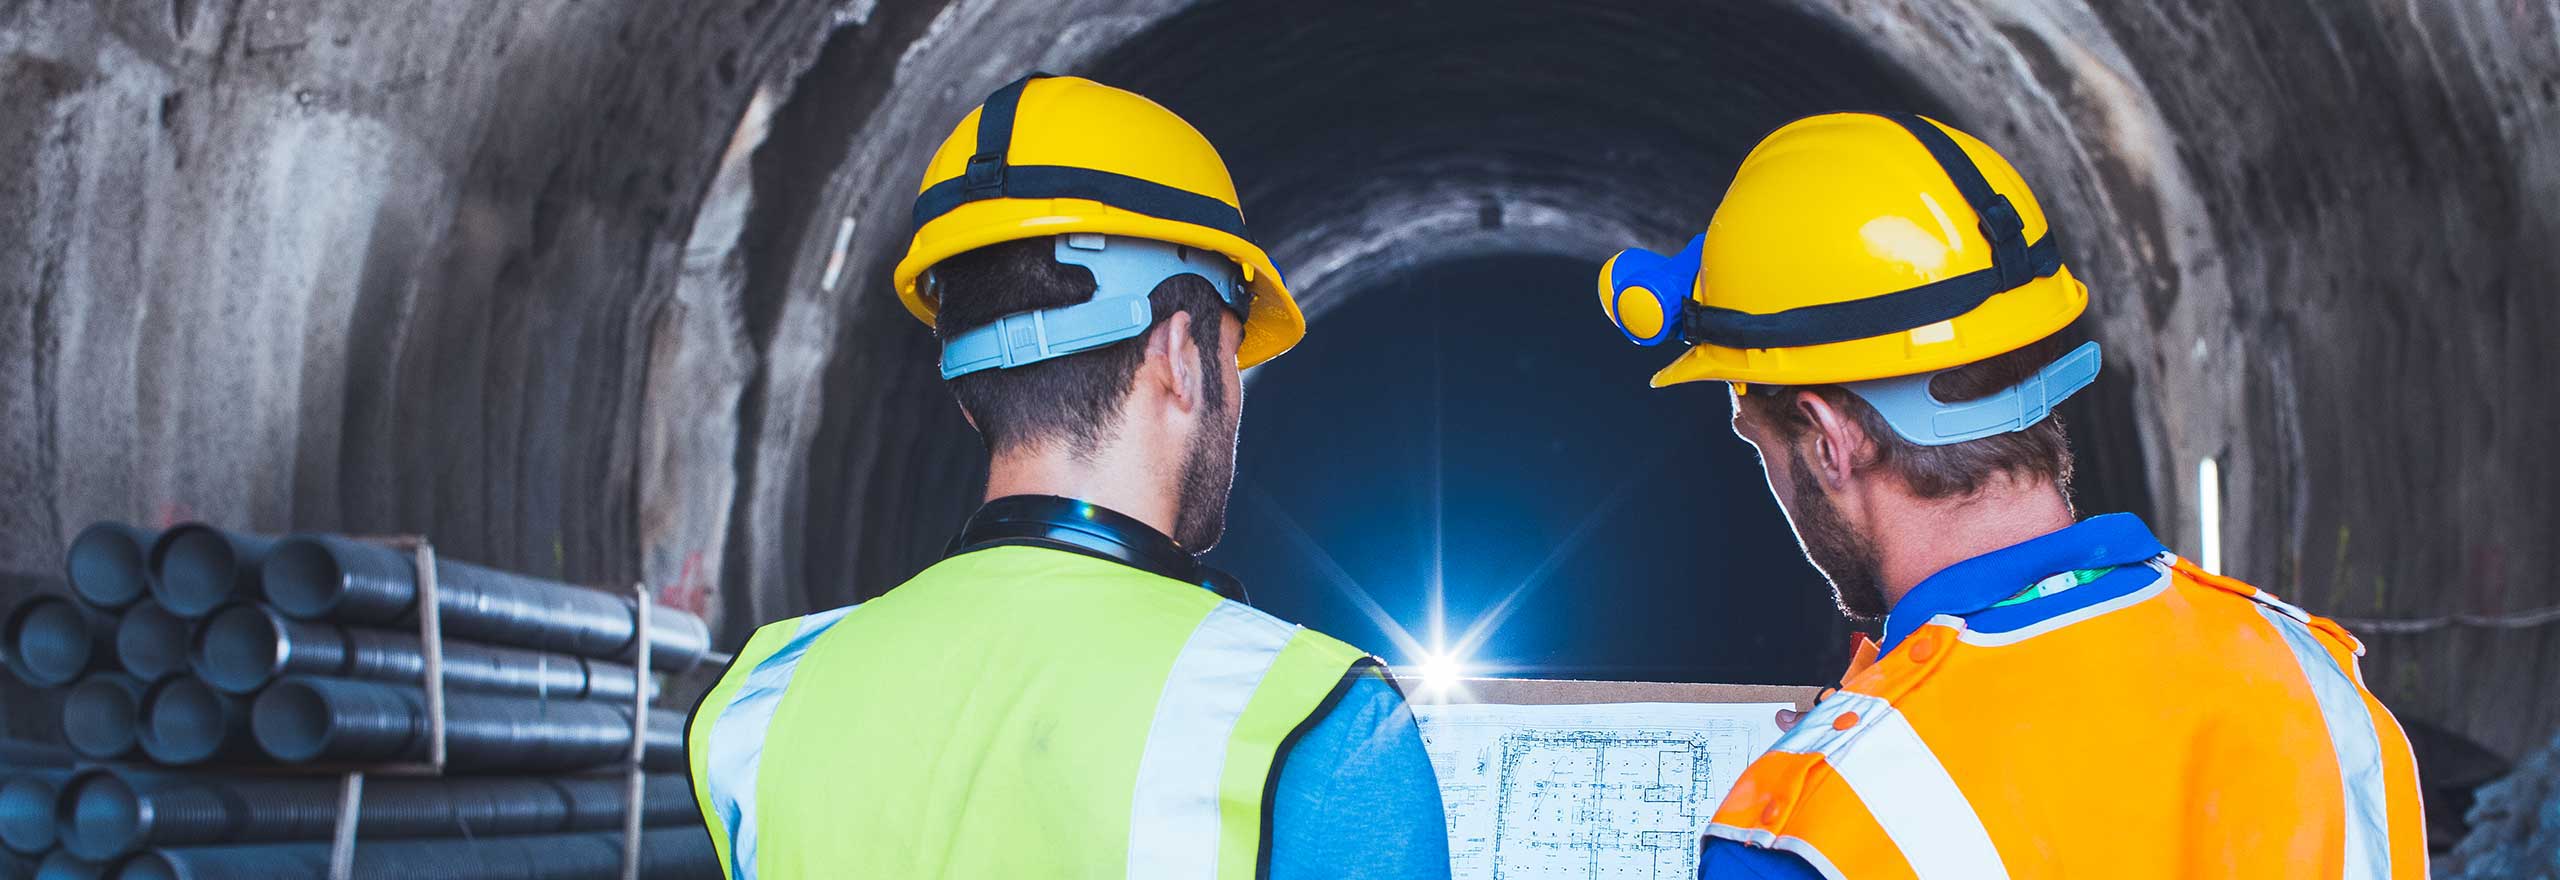 Trabajadores revisando dibujos CAD digitalizados en un túnel